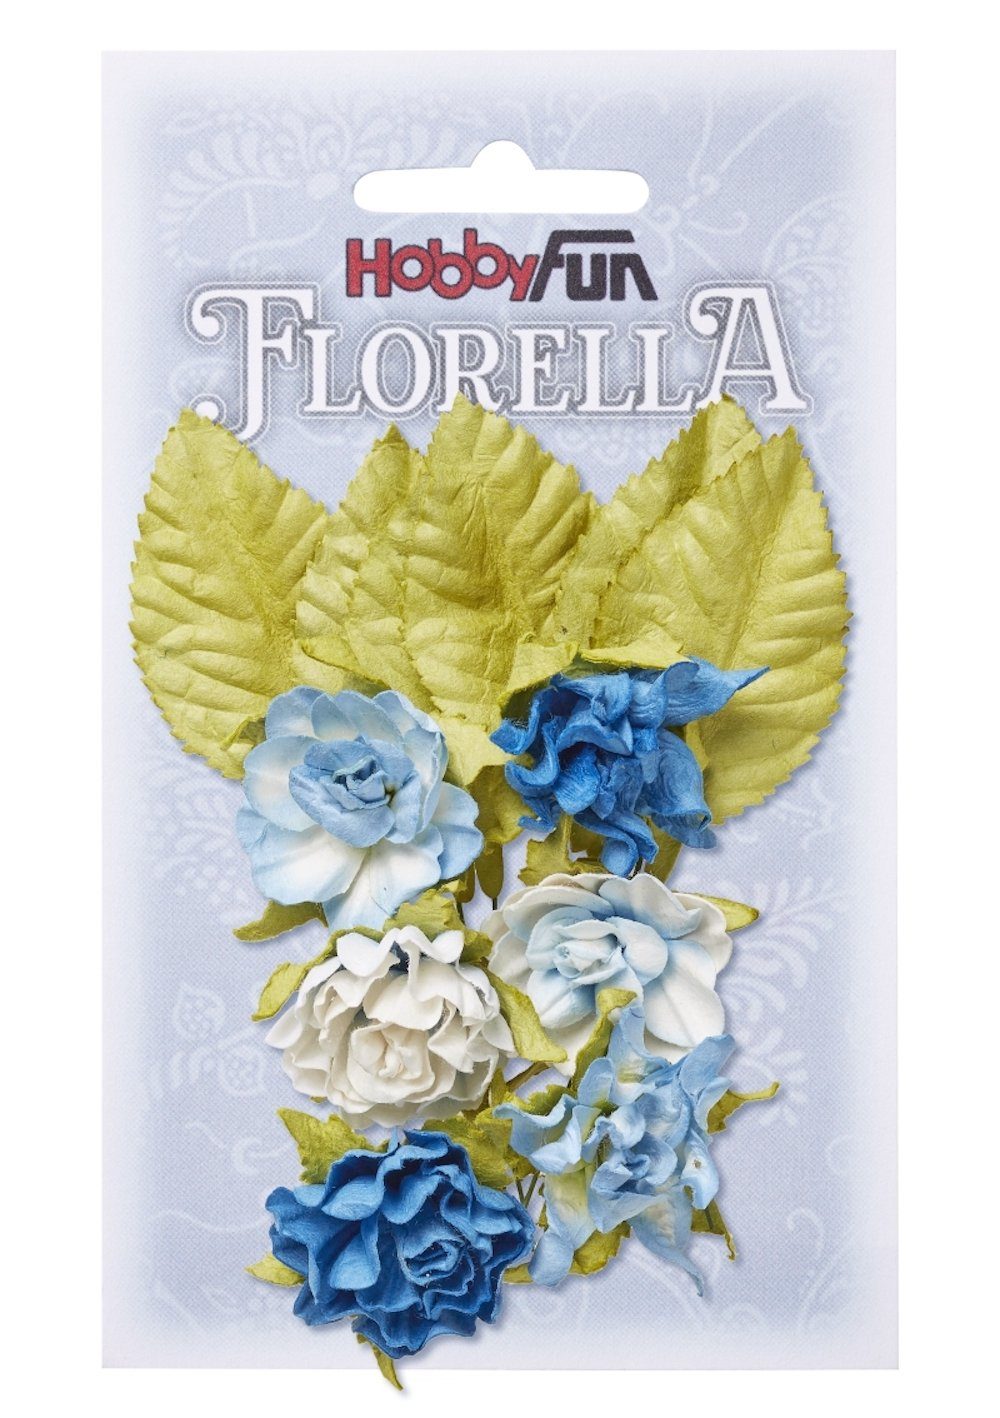 [Vom Hersteller generalüberholtes Produkt] HobbyFun Dekofigur FLORELLA-Blüten & Blätter Maulbeer-Papier cm aus 3